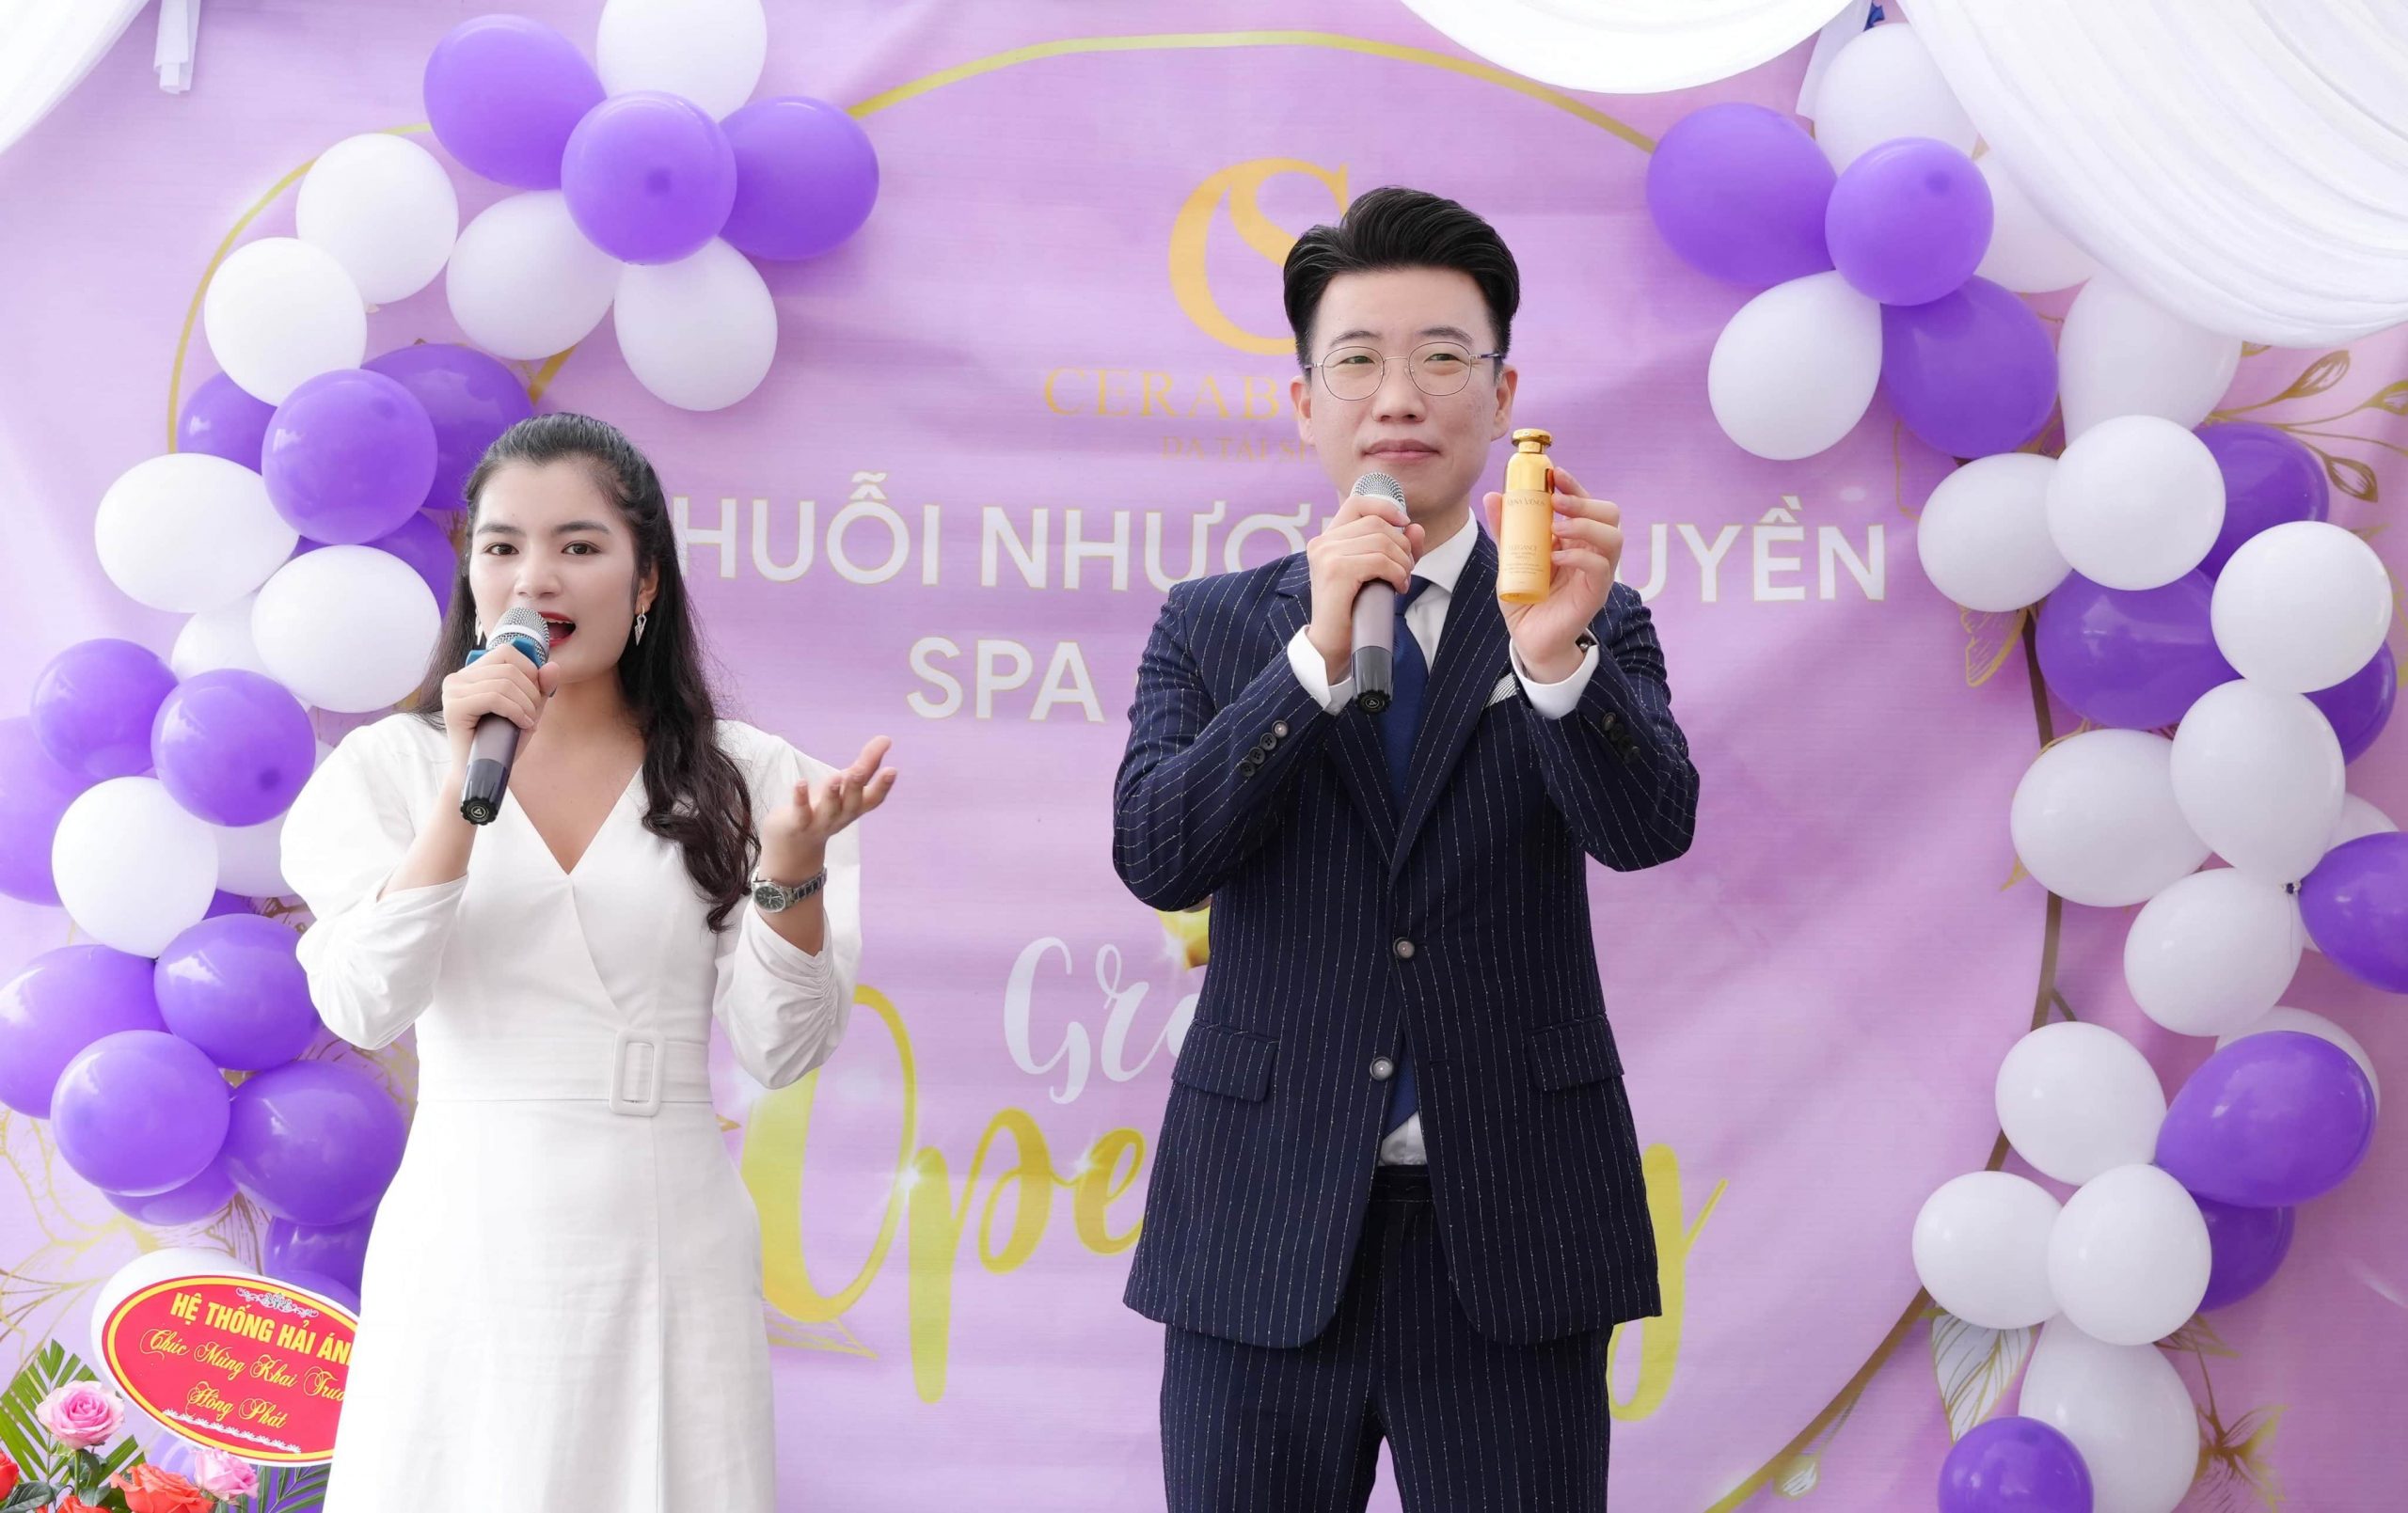 Giám đốc Shin Jong Ho phát biểu nói về sản phẩm, dịch vụ của Chuỗi nhượng quyền thương hiệu Spa Cerabe